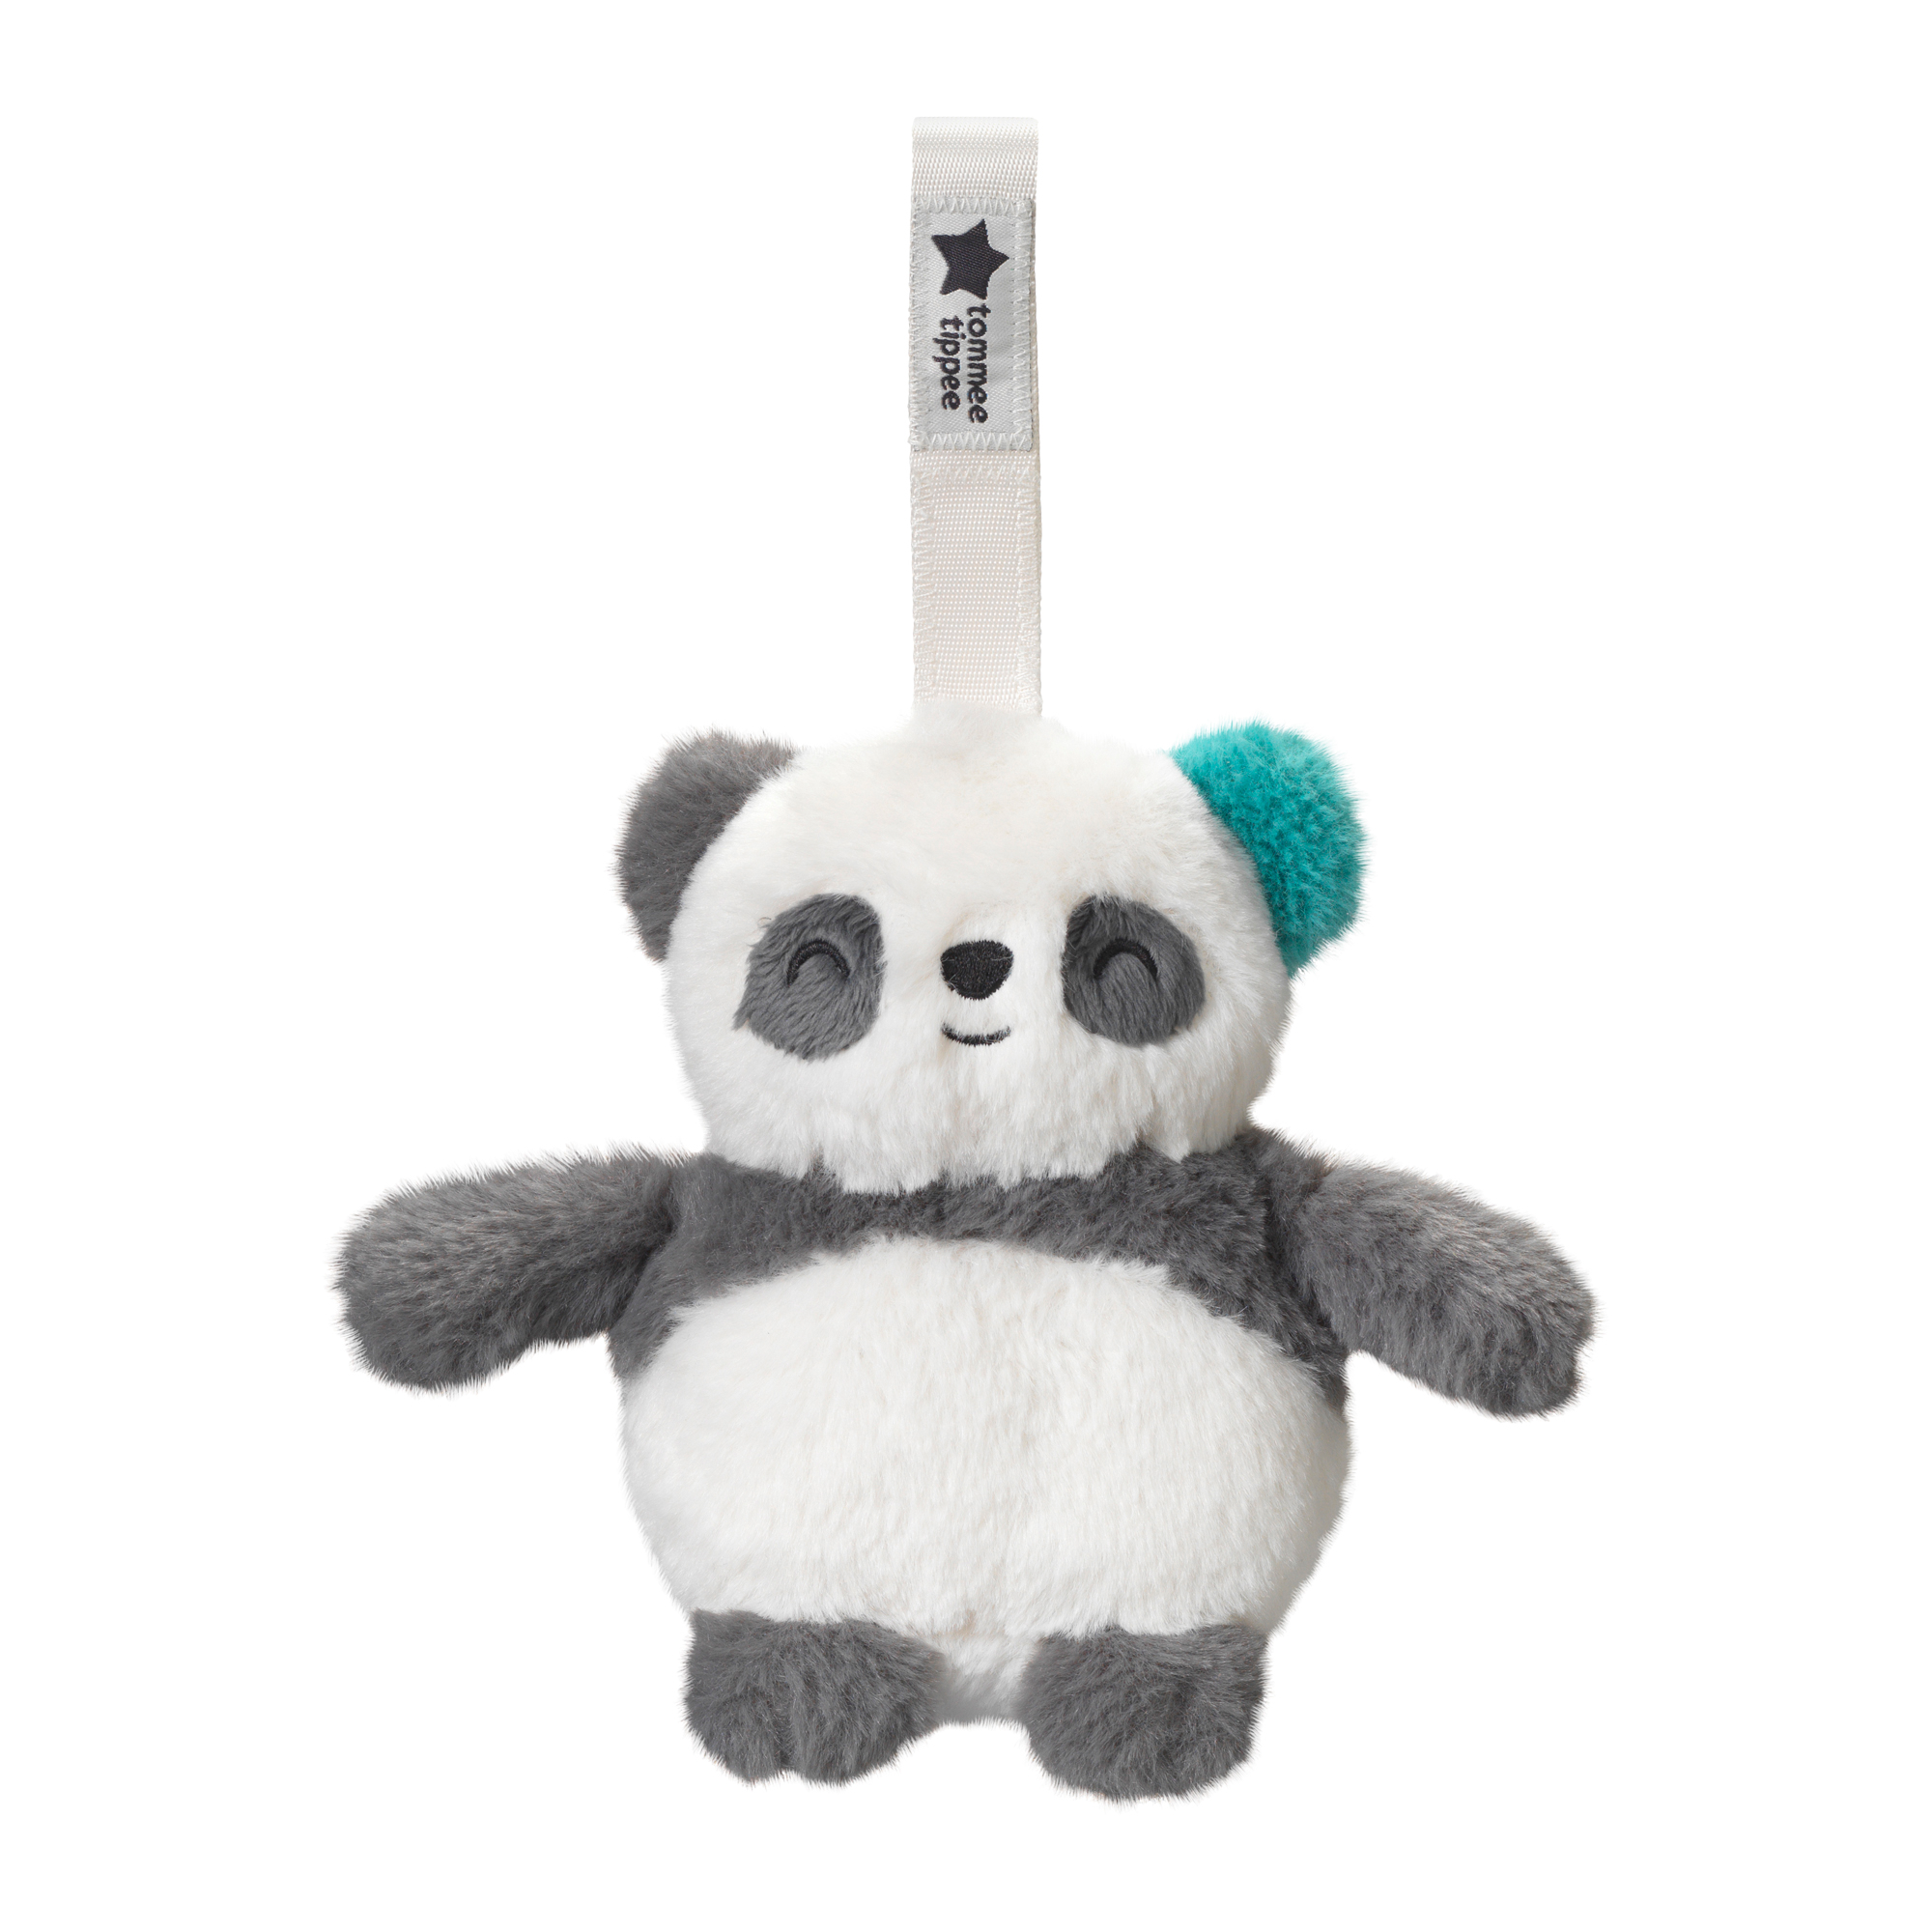 GroFriend-Einschlafhilfe Mini Pip der Panda tommee tippee Grau 2000585015404 1